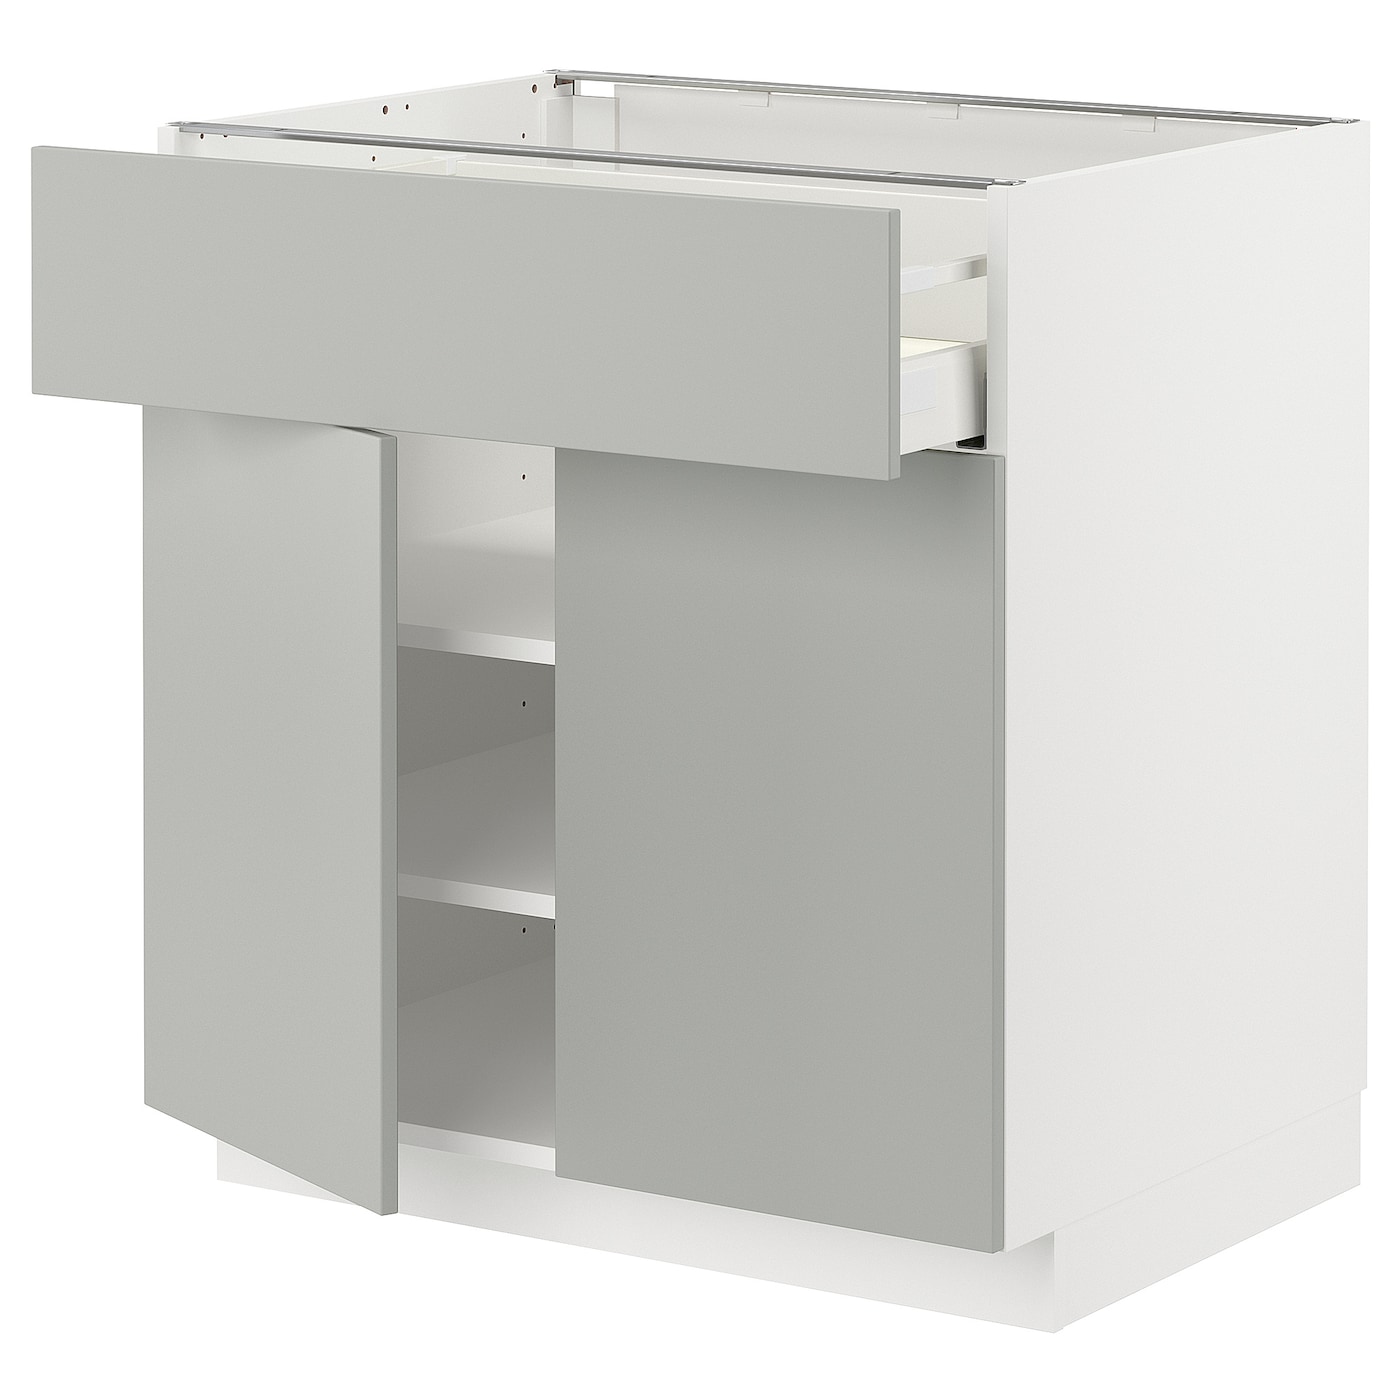 Напольный шкаф - METOD / MAXIMERA IKEA/ МЕТОД/ МАКСИМЕРА ИКЕА,  80х88 см, белый/светло-серый